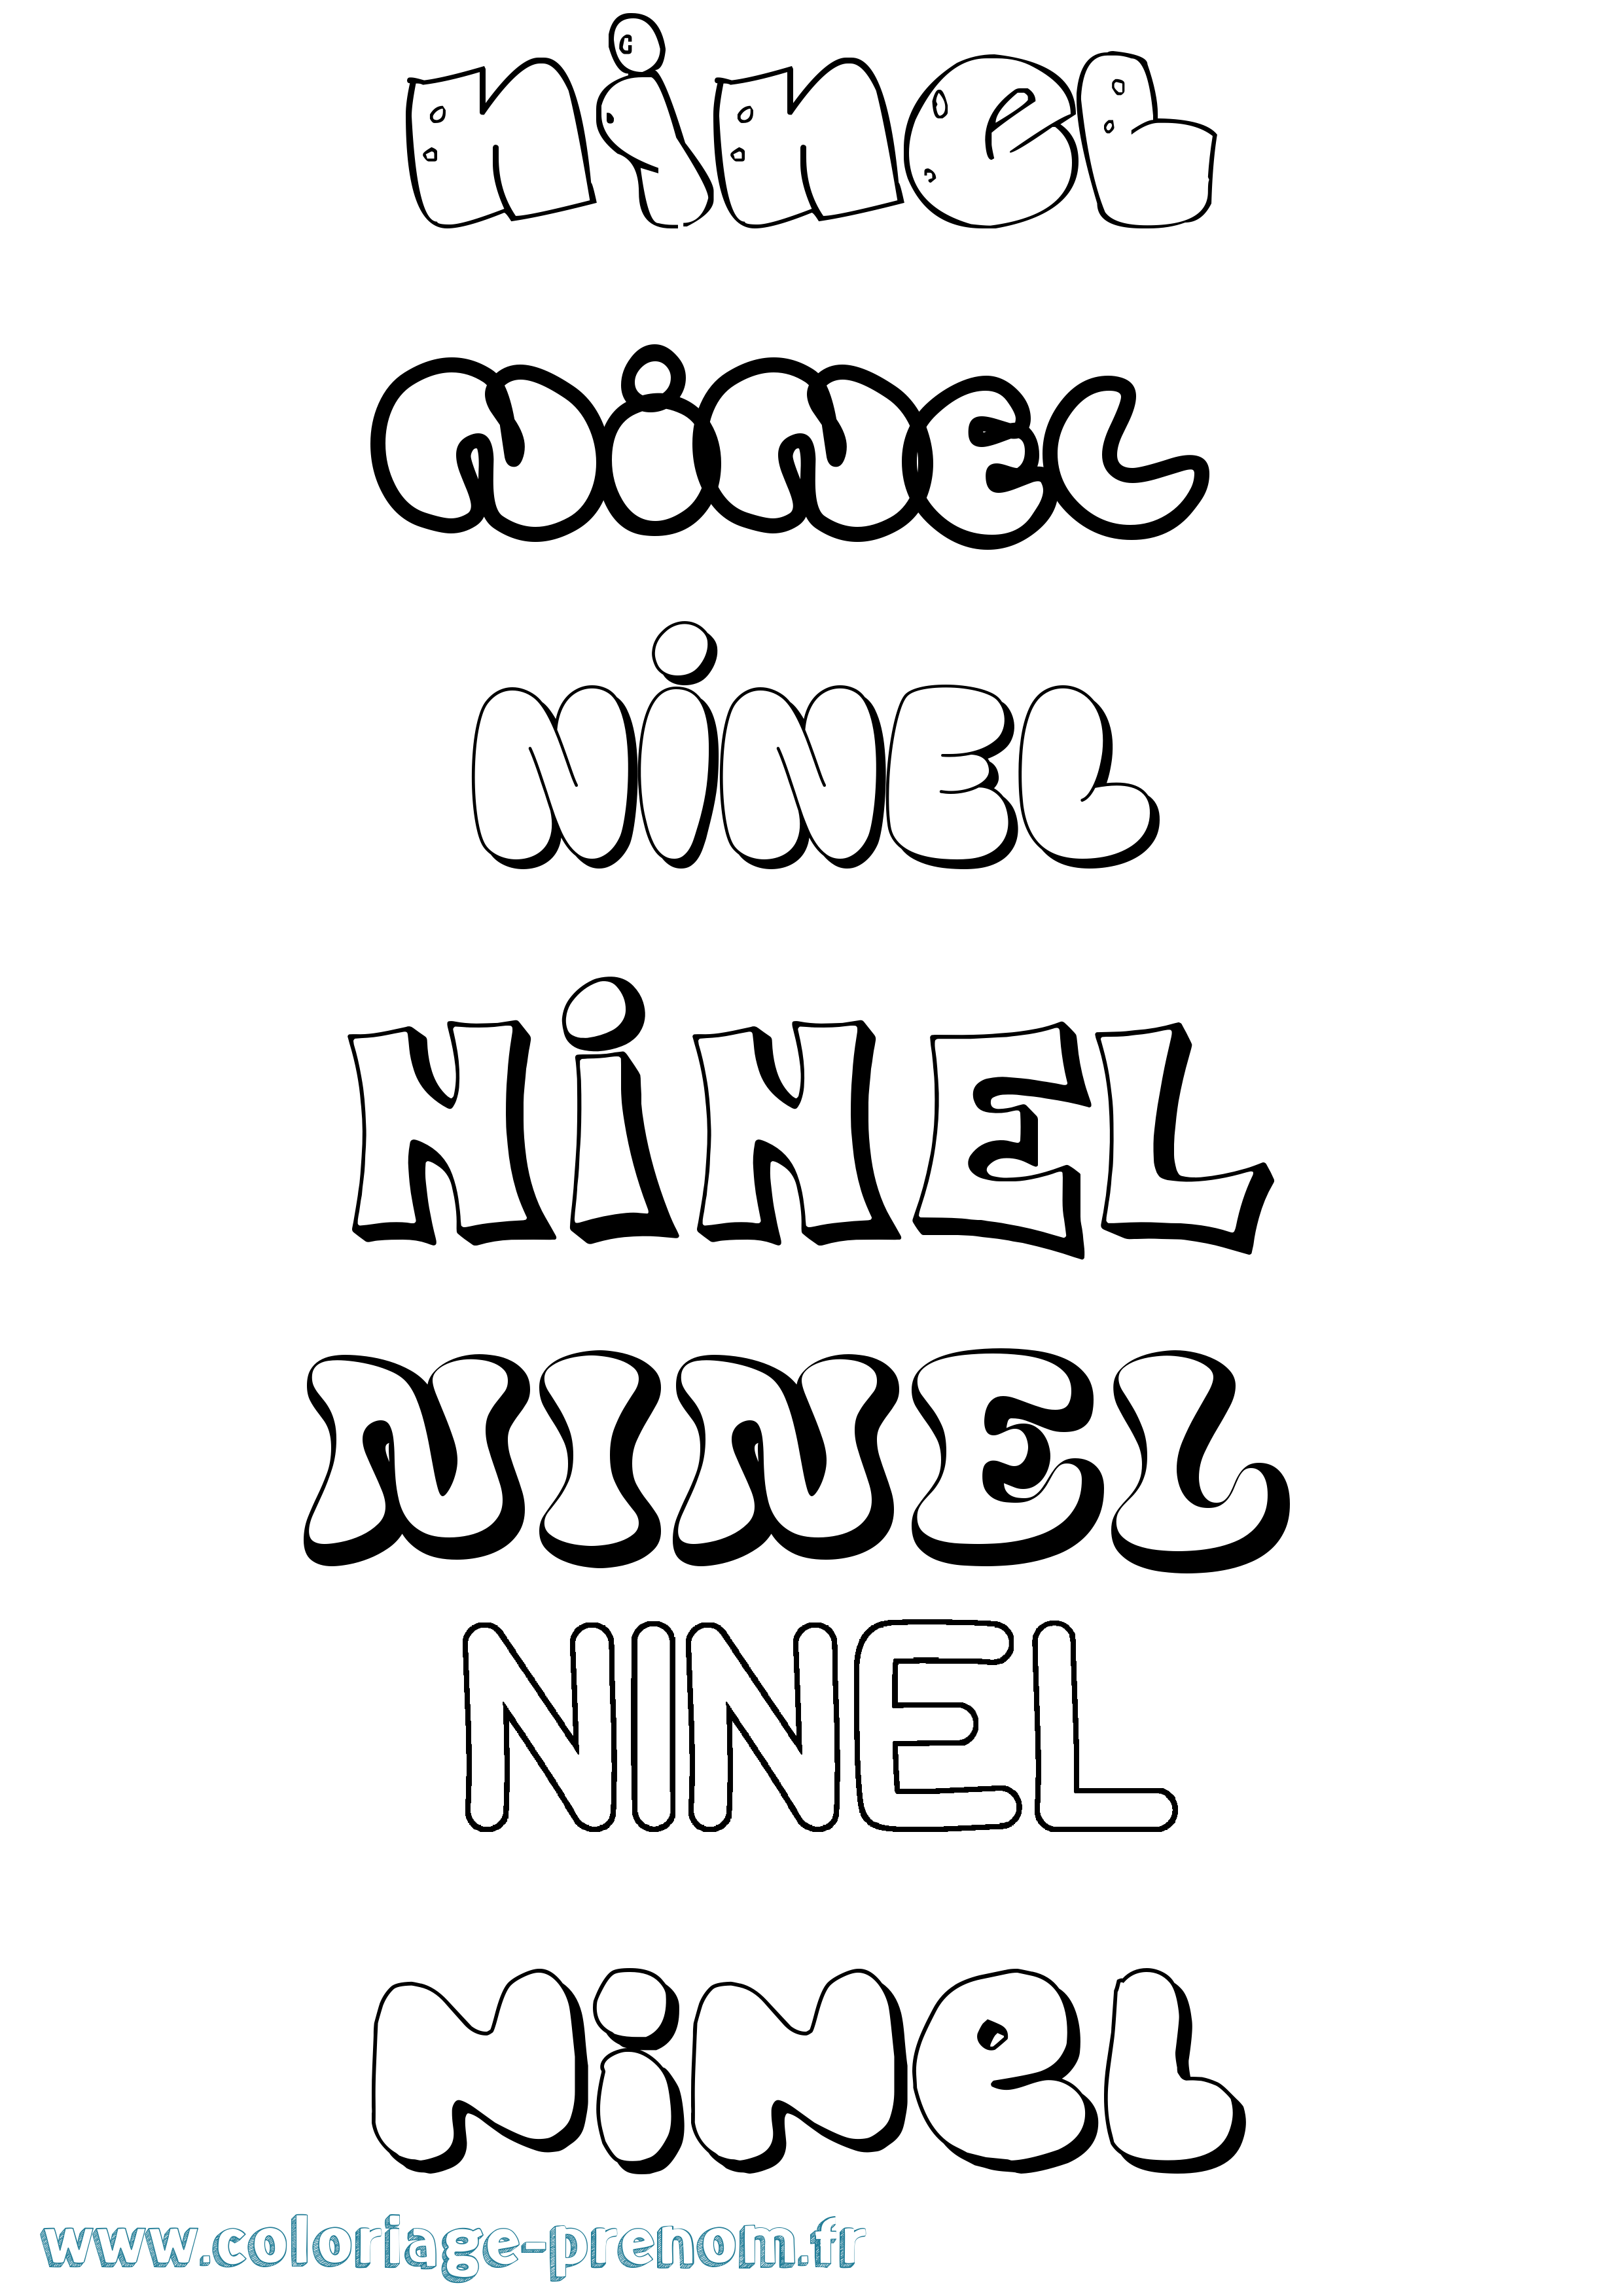 Coloriage prénom Ninel Bubble